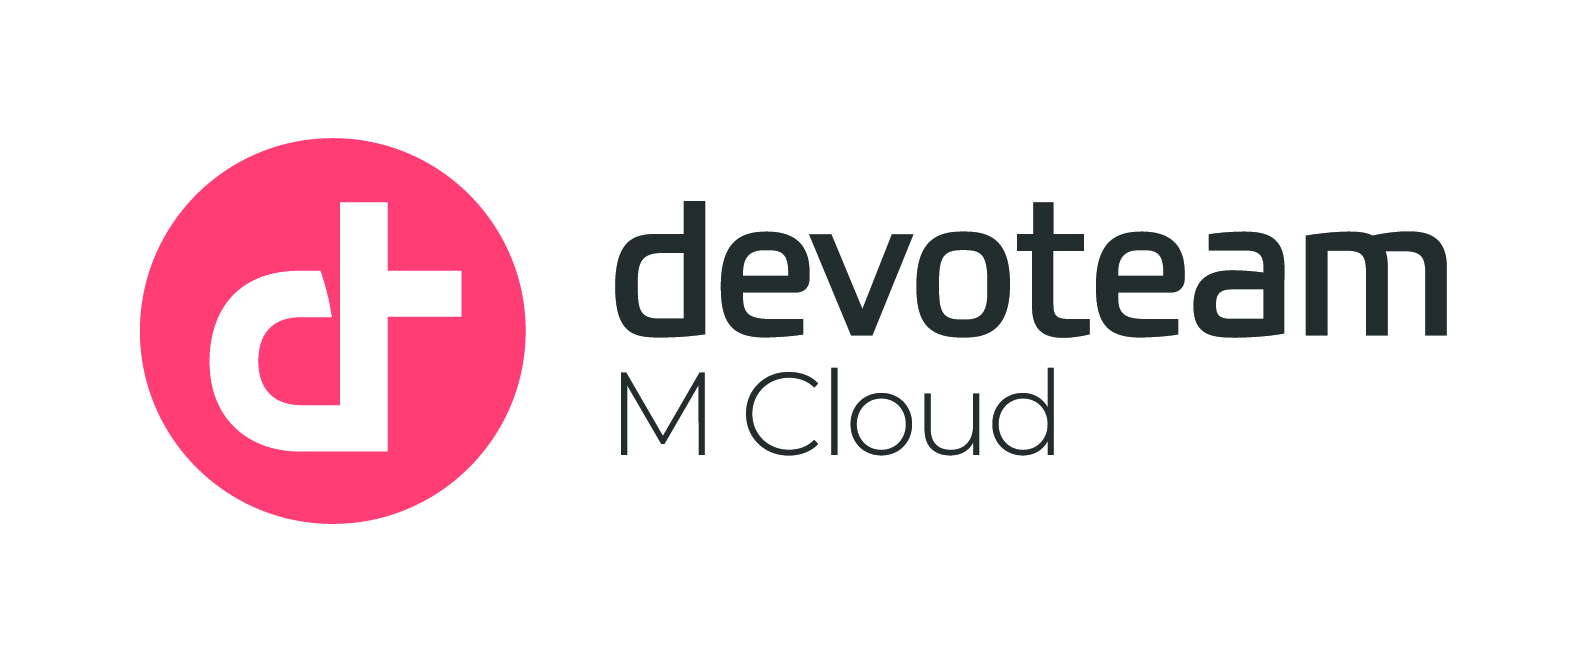 Devoteam M Cloud erhält zwei weitere Security Advanced Specializations: Identity- und Access Management sowie Cloud-Security